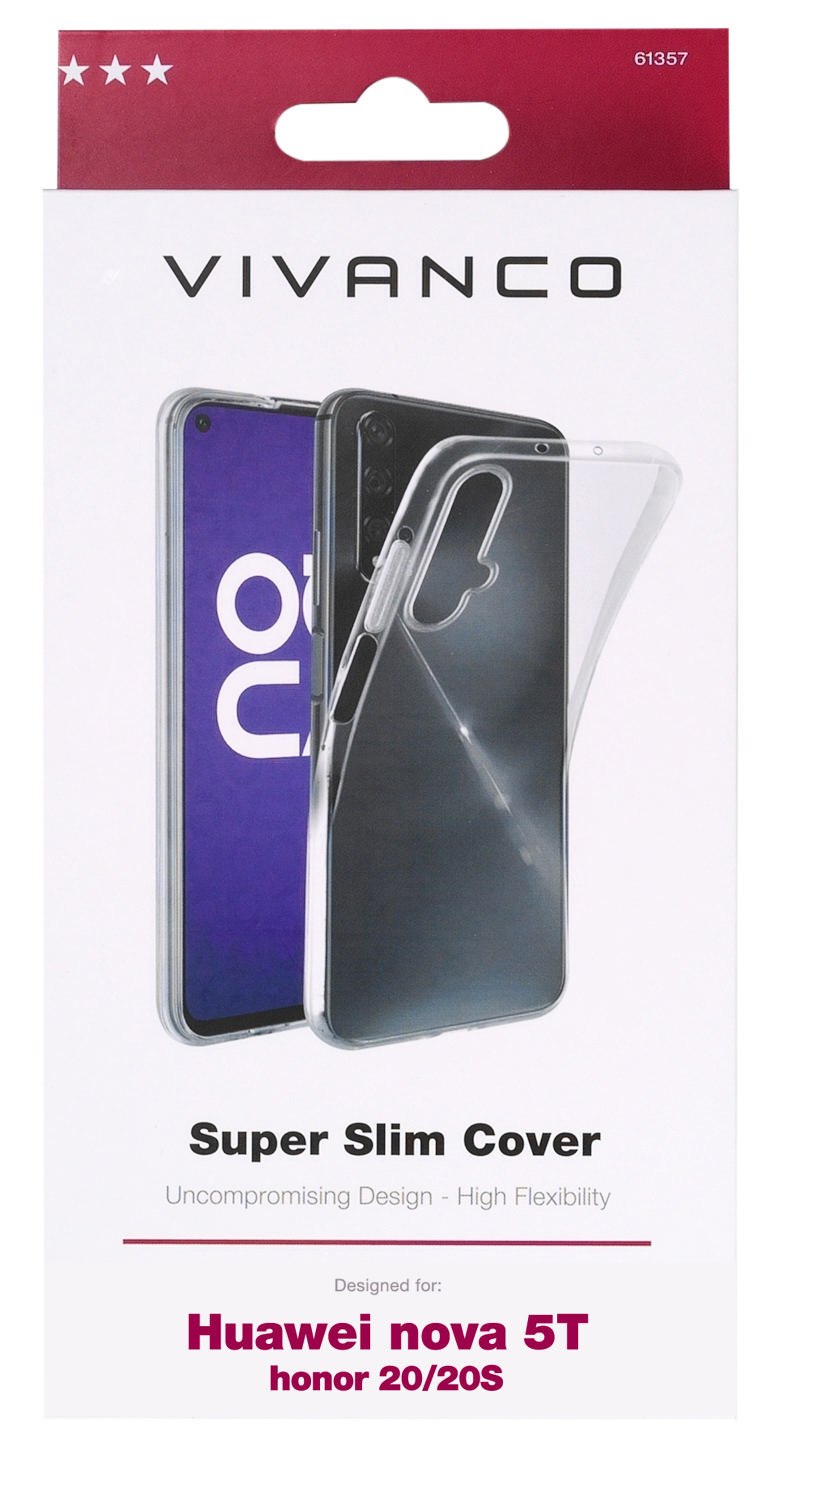 VIVANCO Super Honor 5T Slim, Transparent 20/20S, Nova Huawei, Backcover